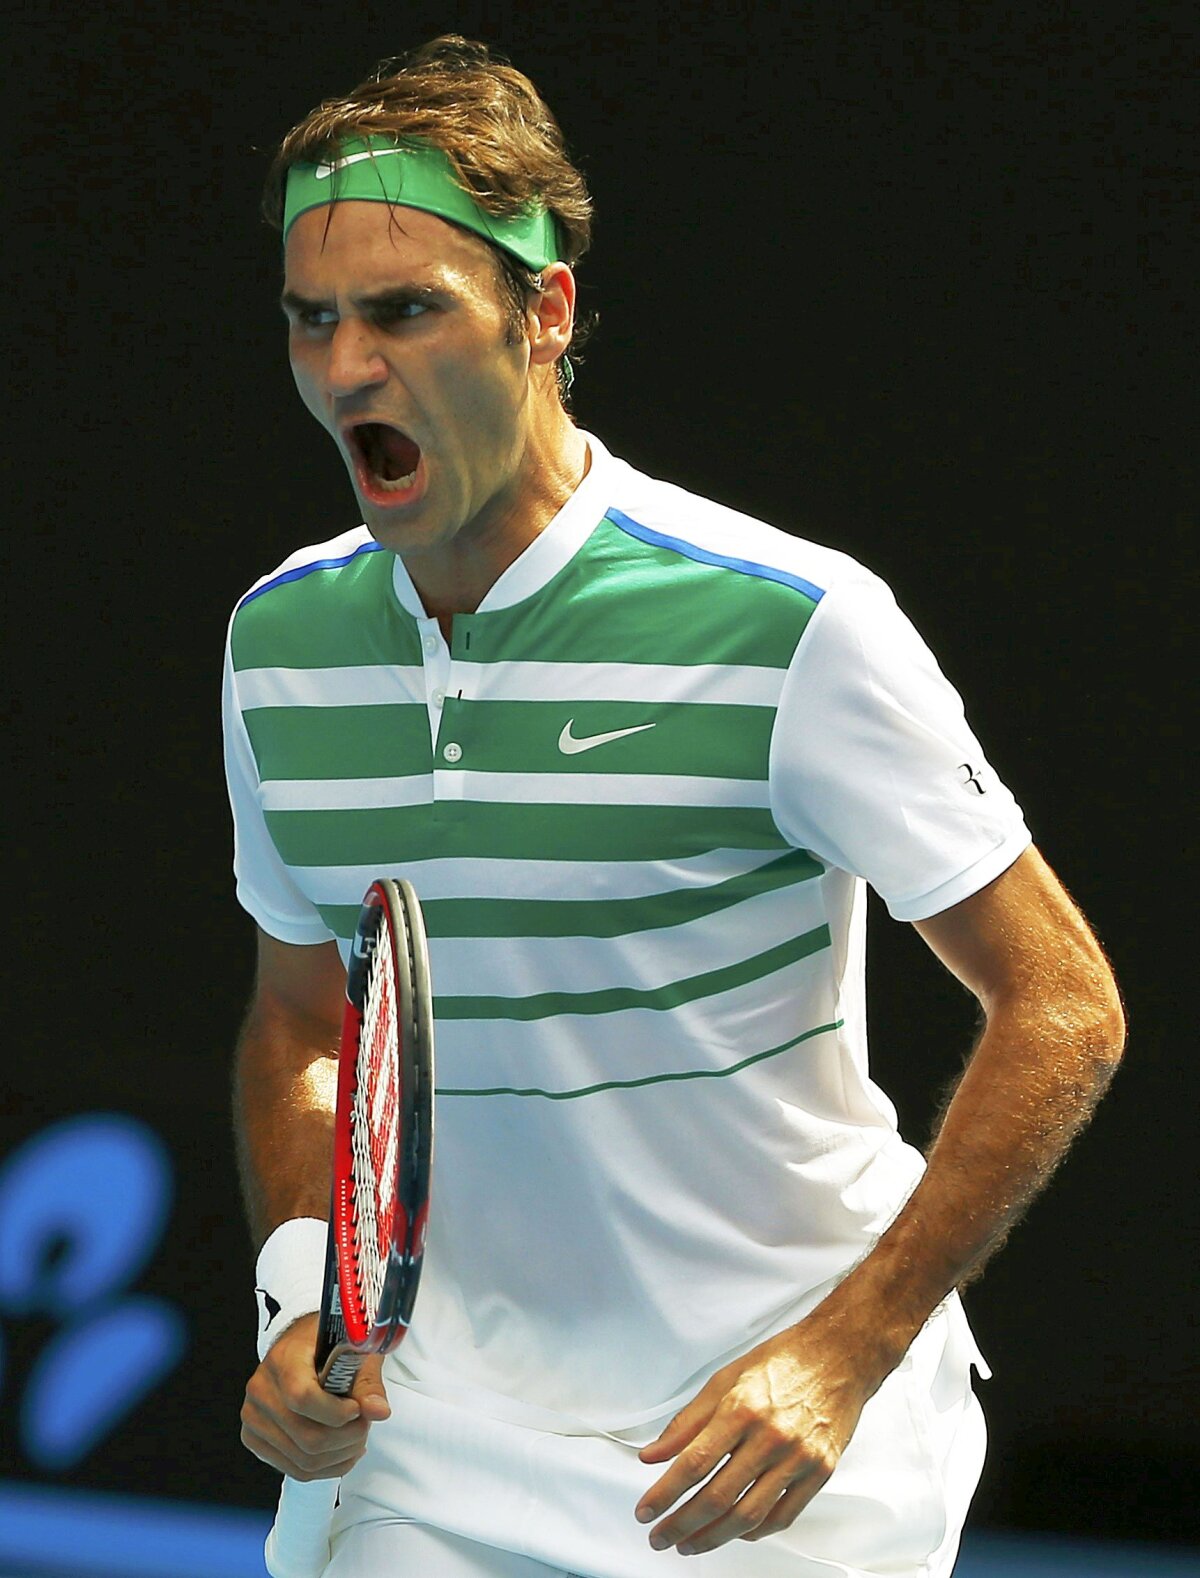 Finala mare se joacă în semifinale! 7 lucruri pe care trebuie să le știi despre încleștarea Roger Federer vs Novak Djokovici: nervi și echilibru!